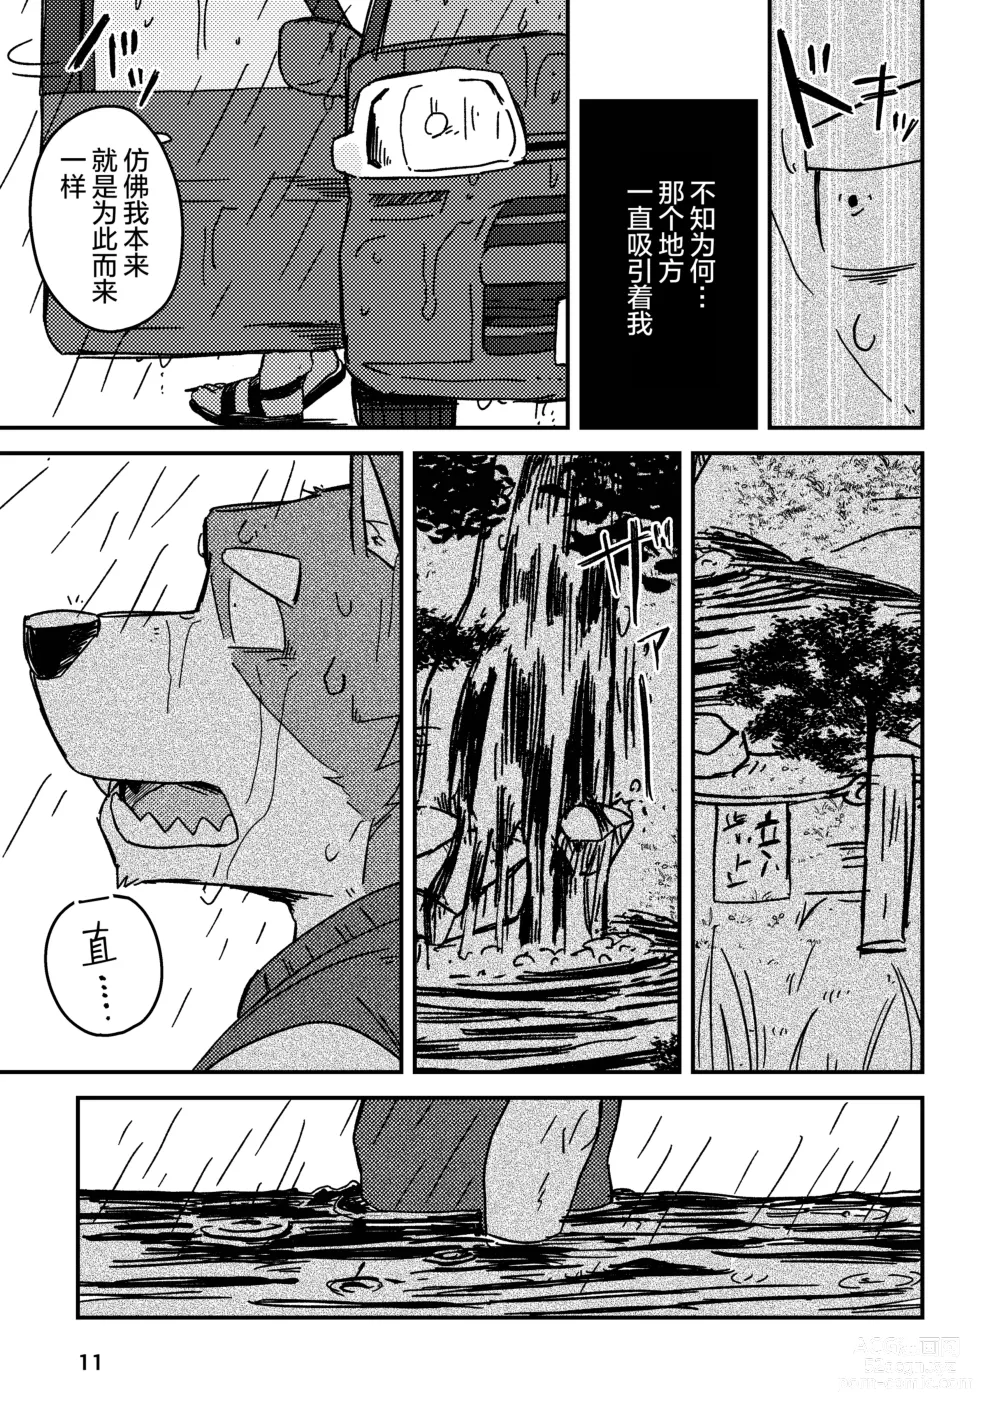 Page 11 of doujinshi 约定的龙穴